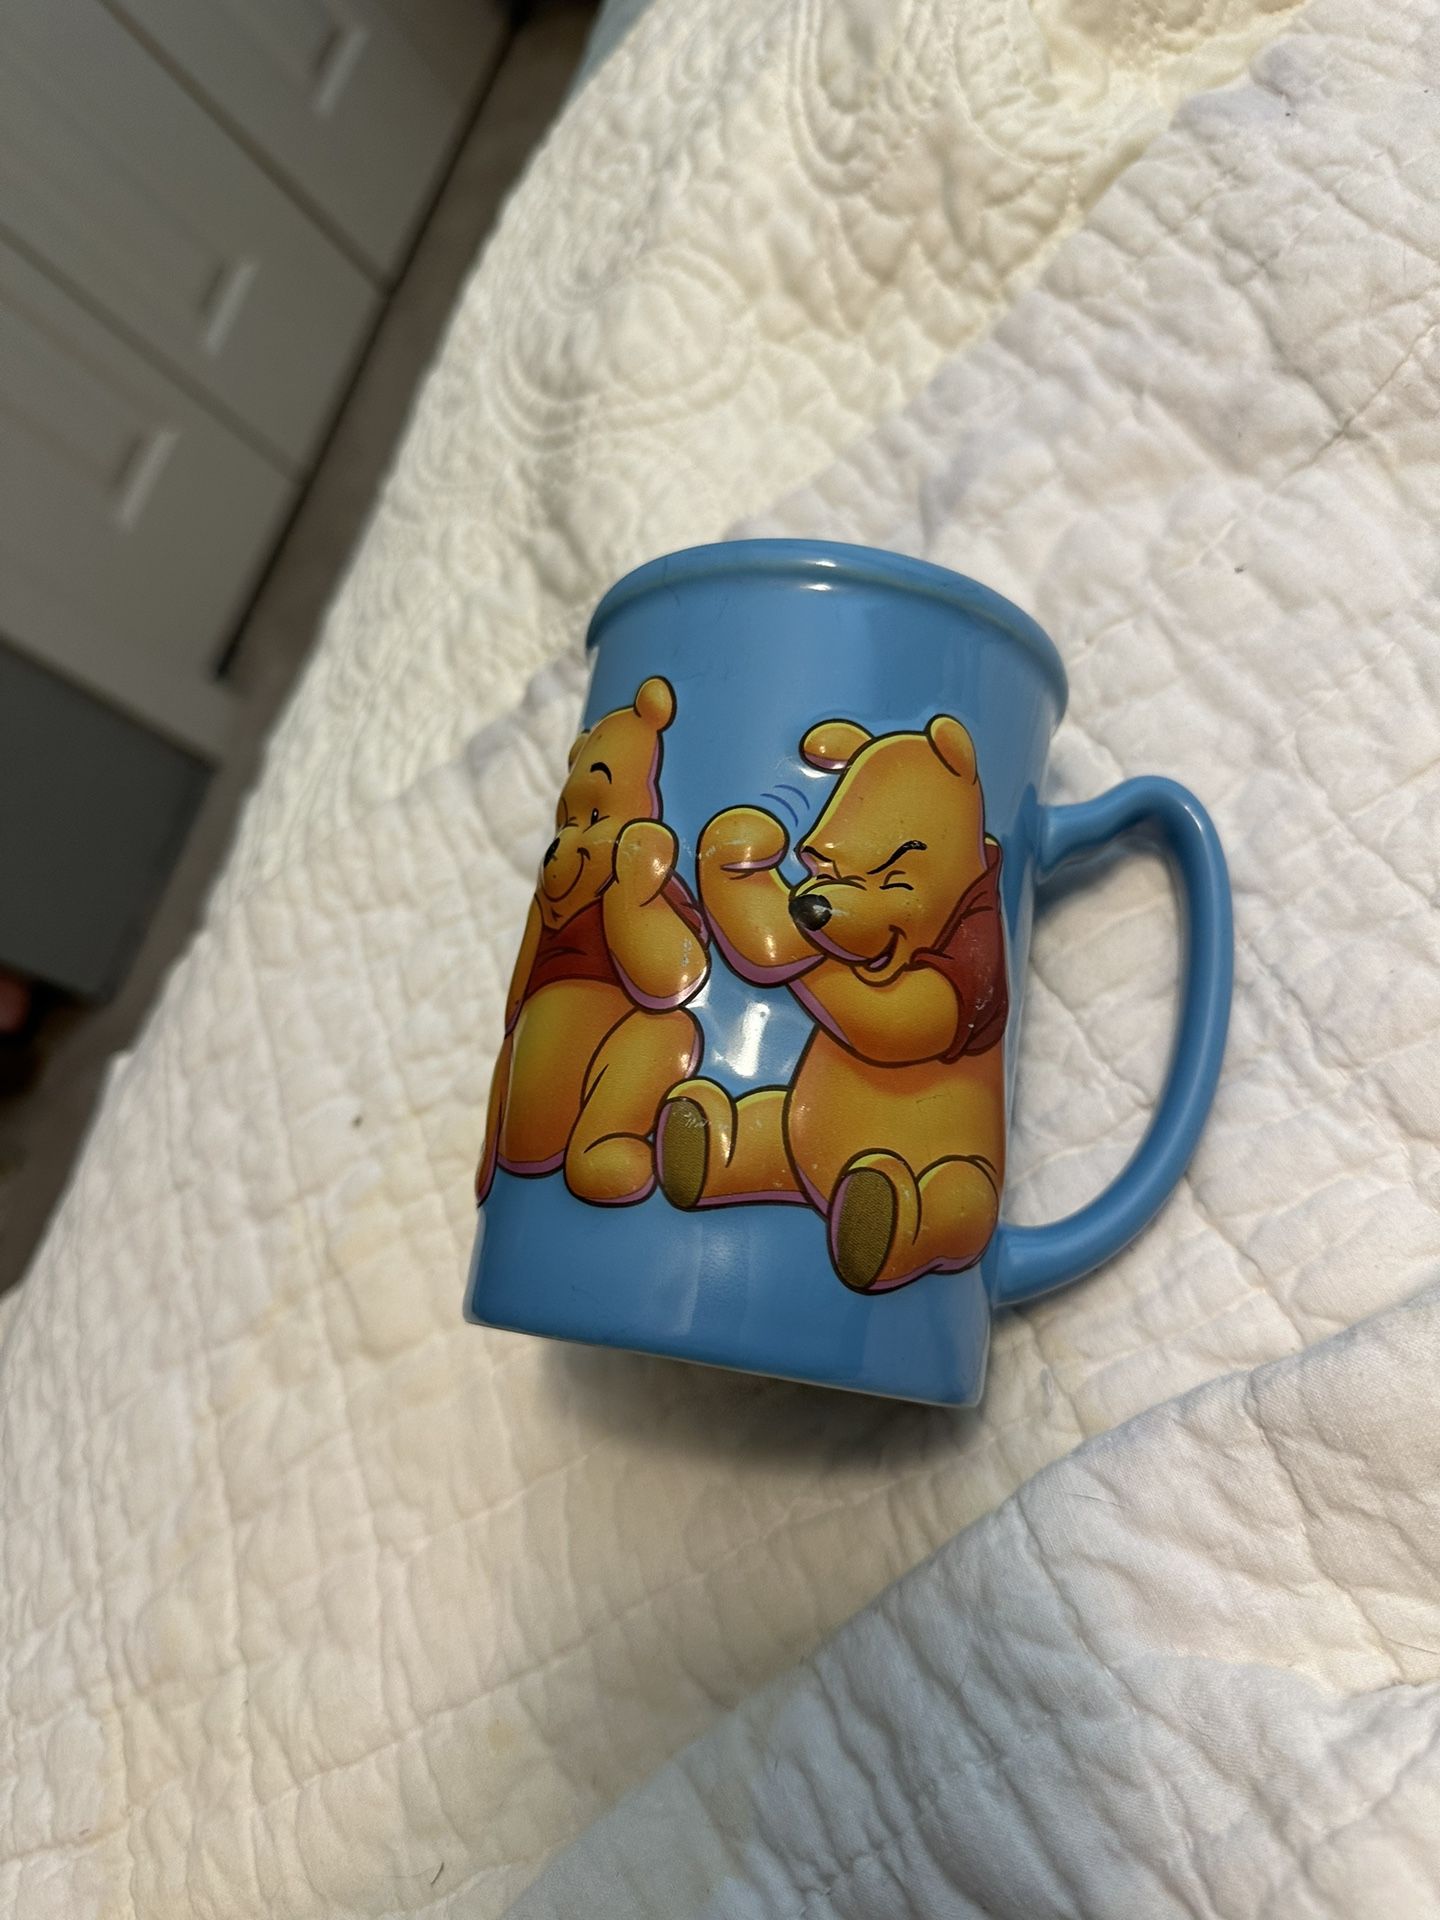 Winnie The Pooh Mug